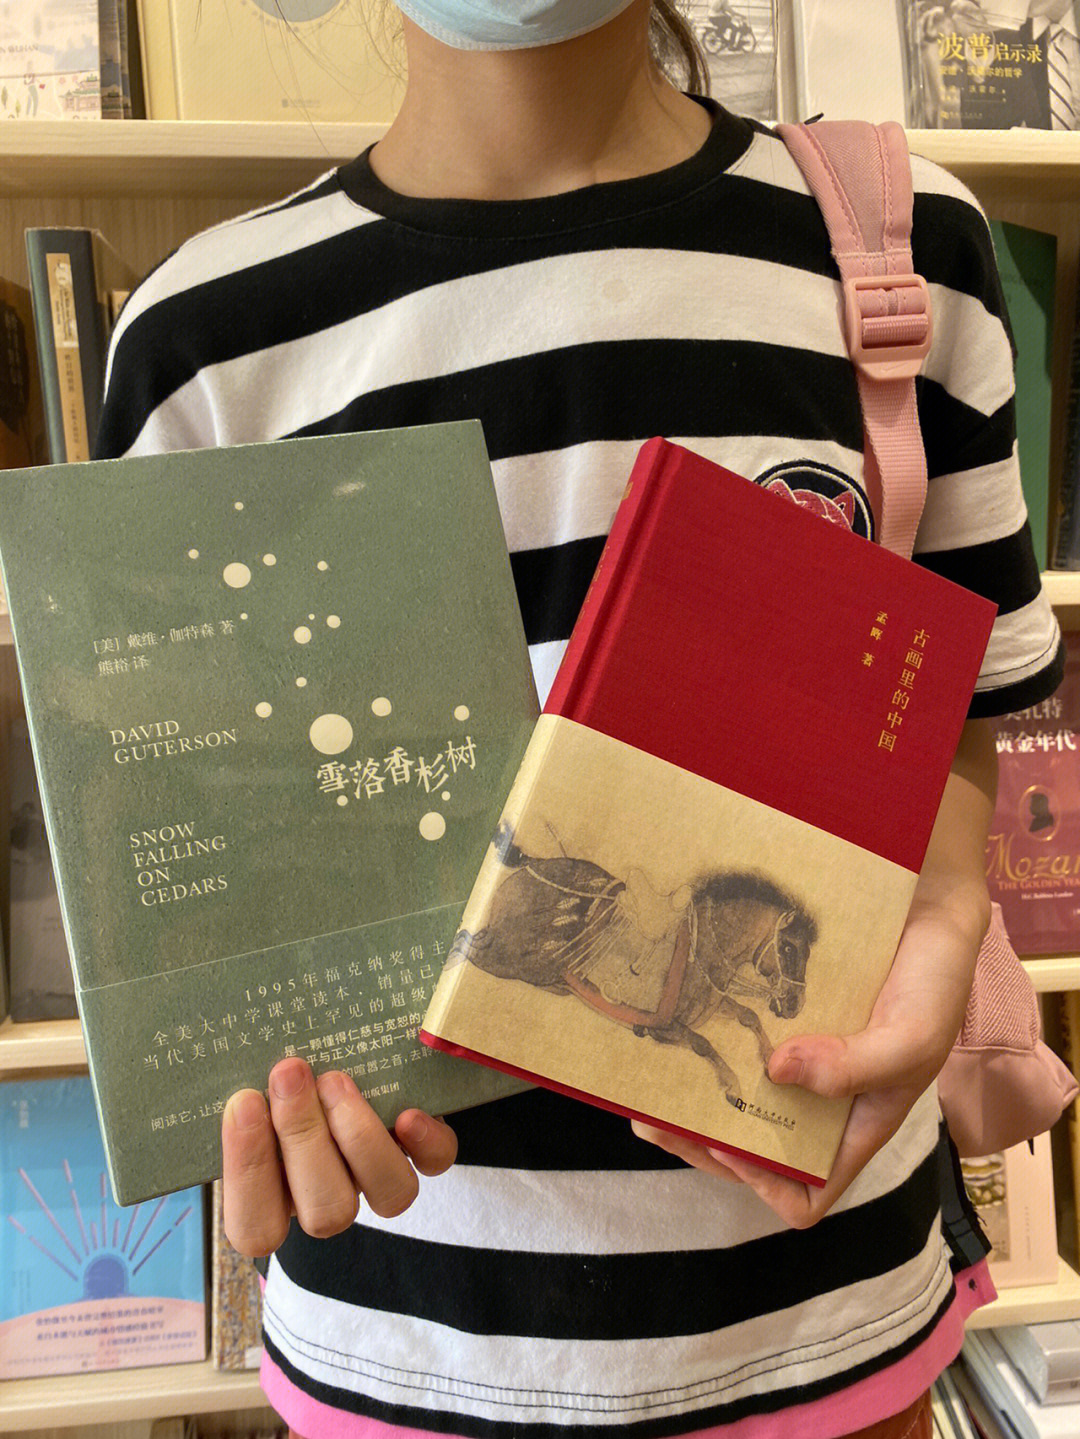 最后结账的时候,手里拿的是这两本书:《雪落香杉树》和《古画里的中国